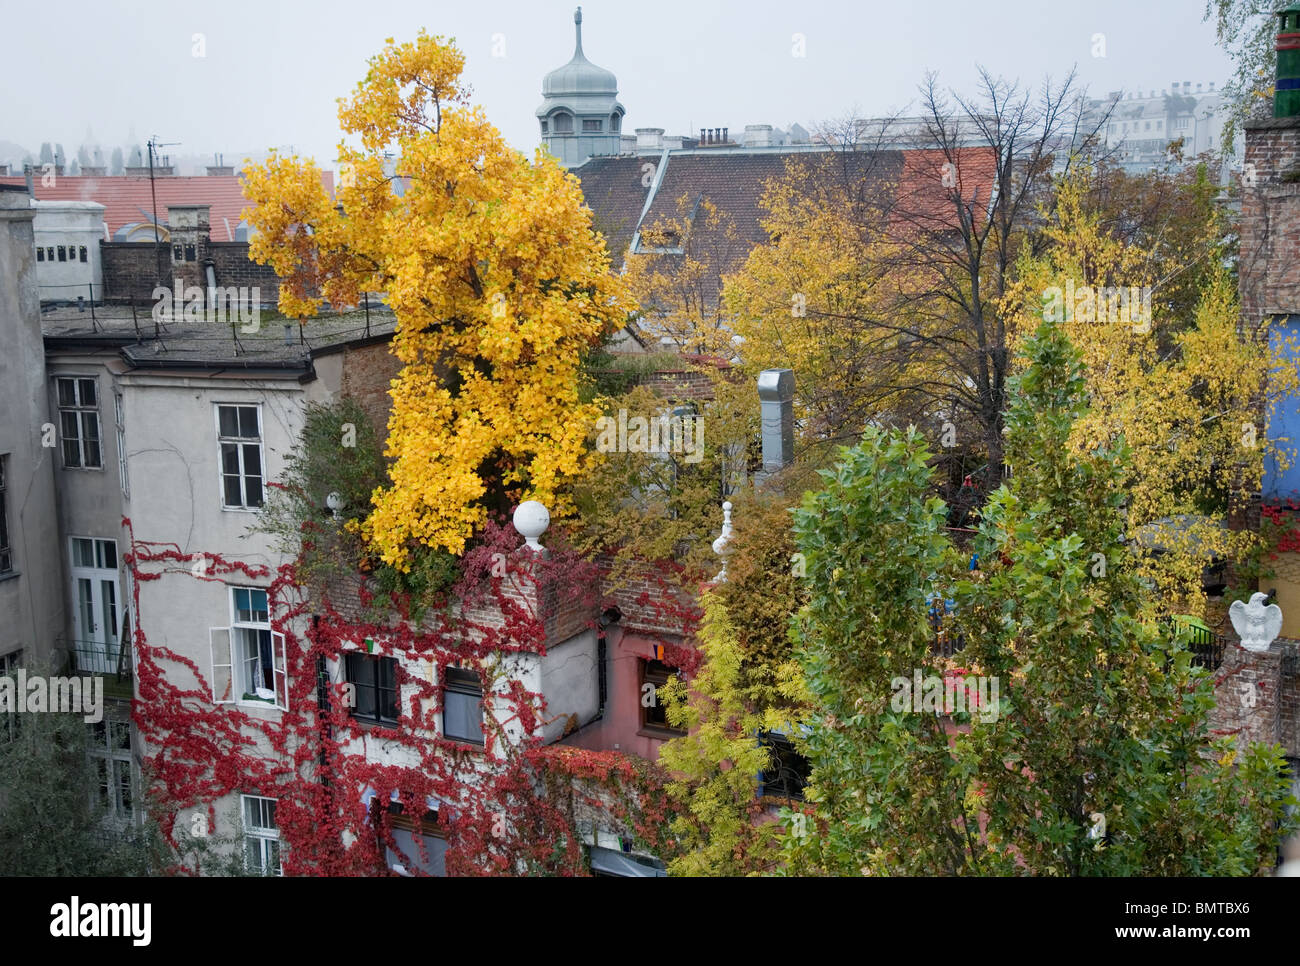 Hundertwasser housing complex, Vienna, Austria Stock Photo